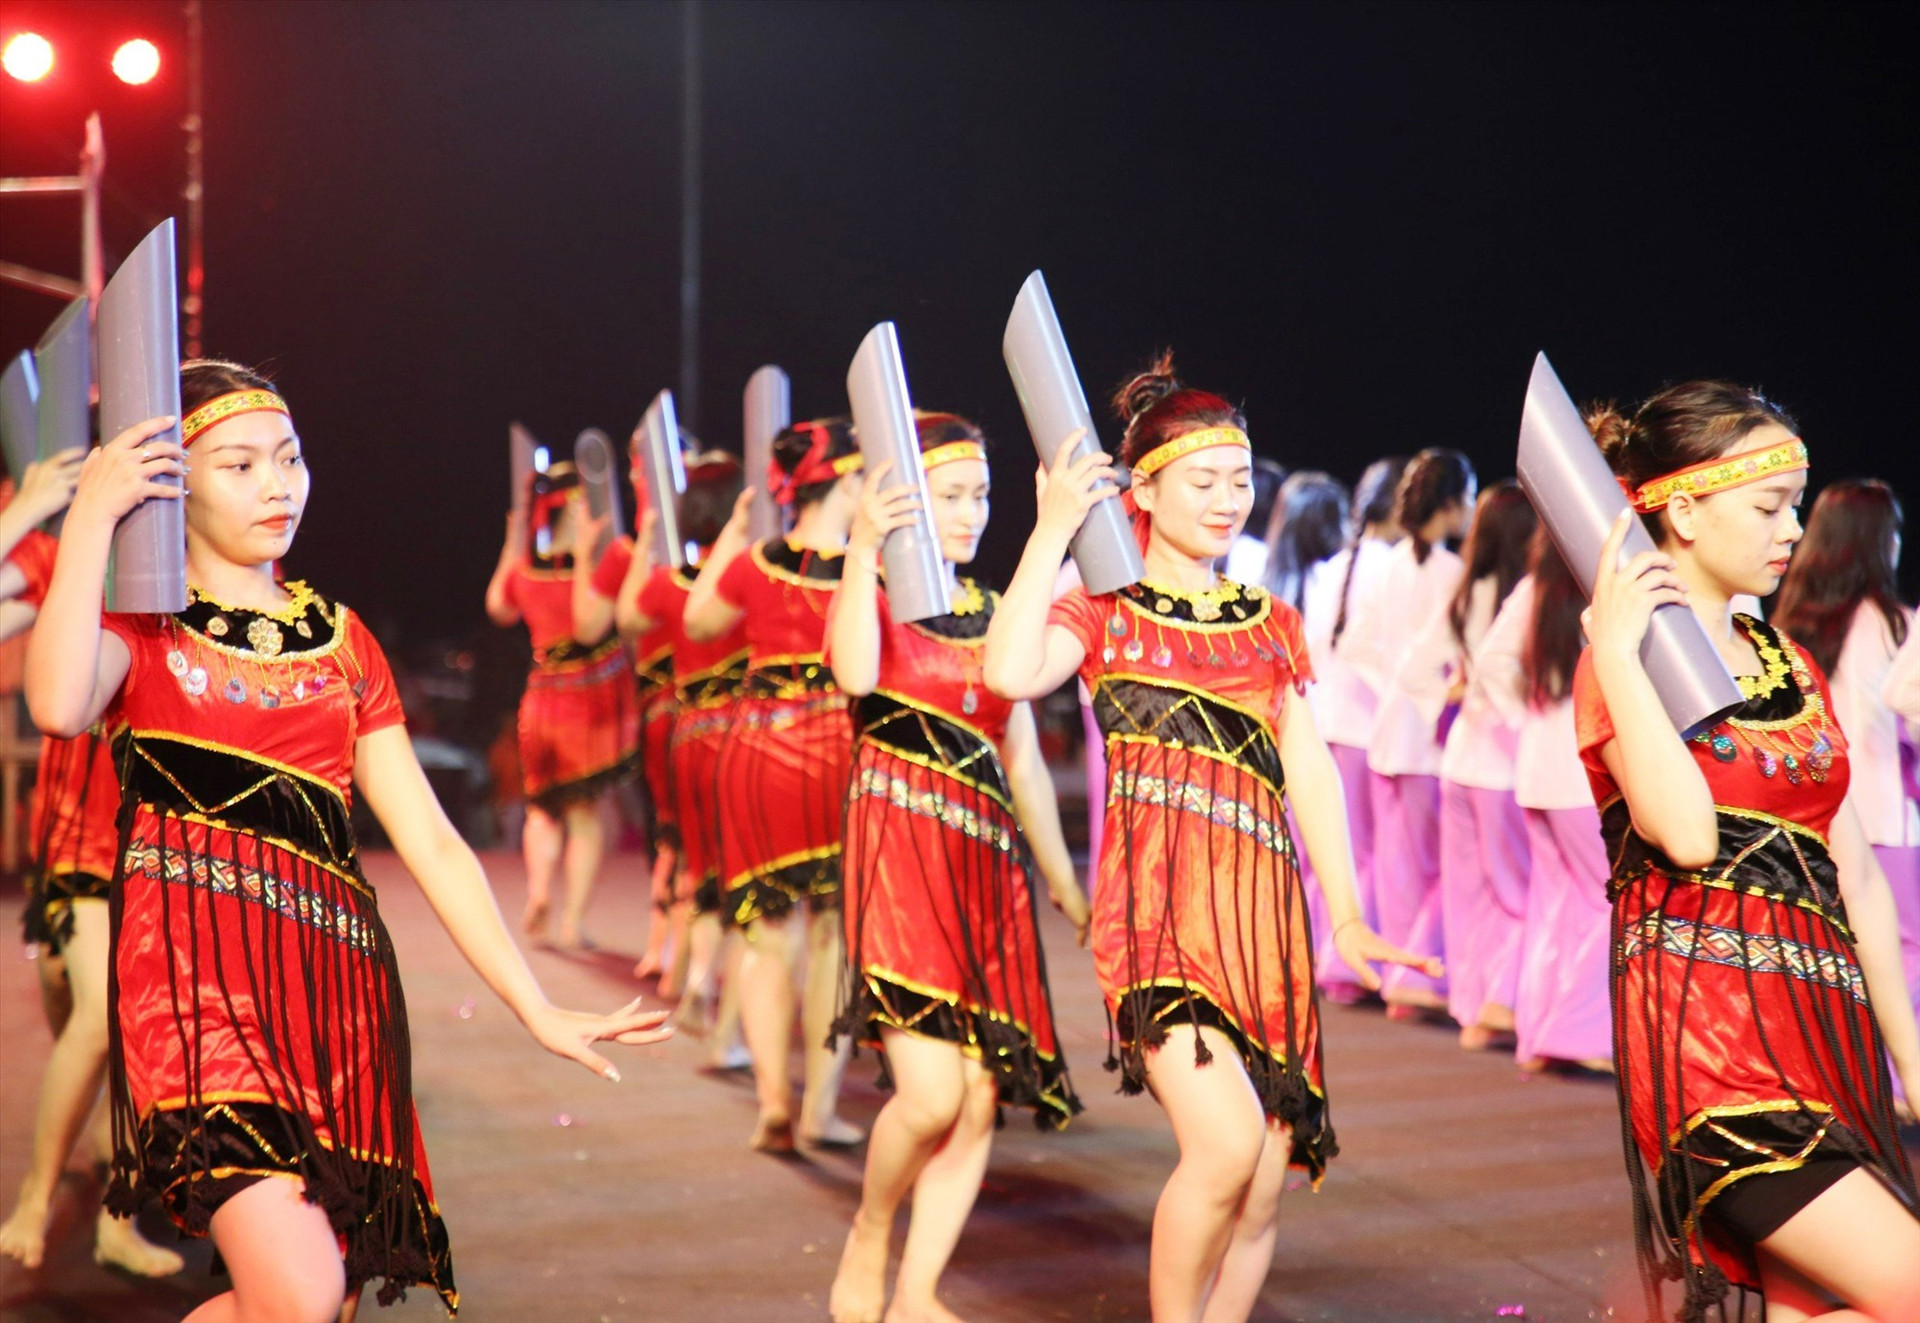 Chương trình nghệ thuật đêm khai mạc chủ đề “Sắc màu văn hóa miền núi Quảng Nam - khát vọng phát triển” khá hoành tráng. Ảnh: P.Đ.Q